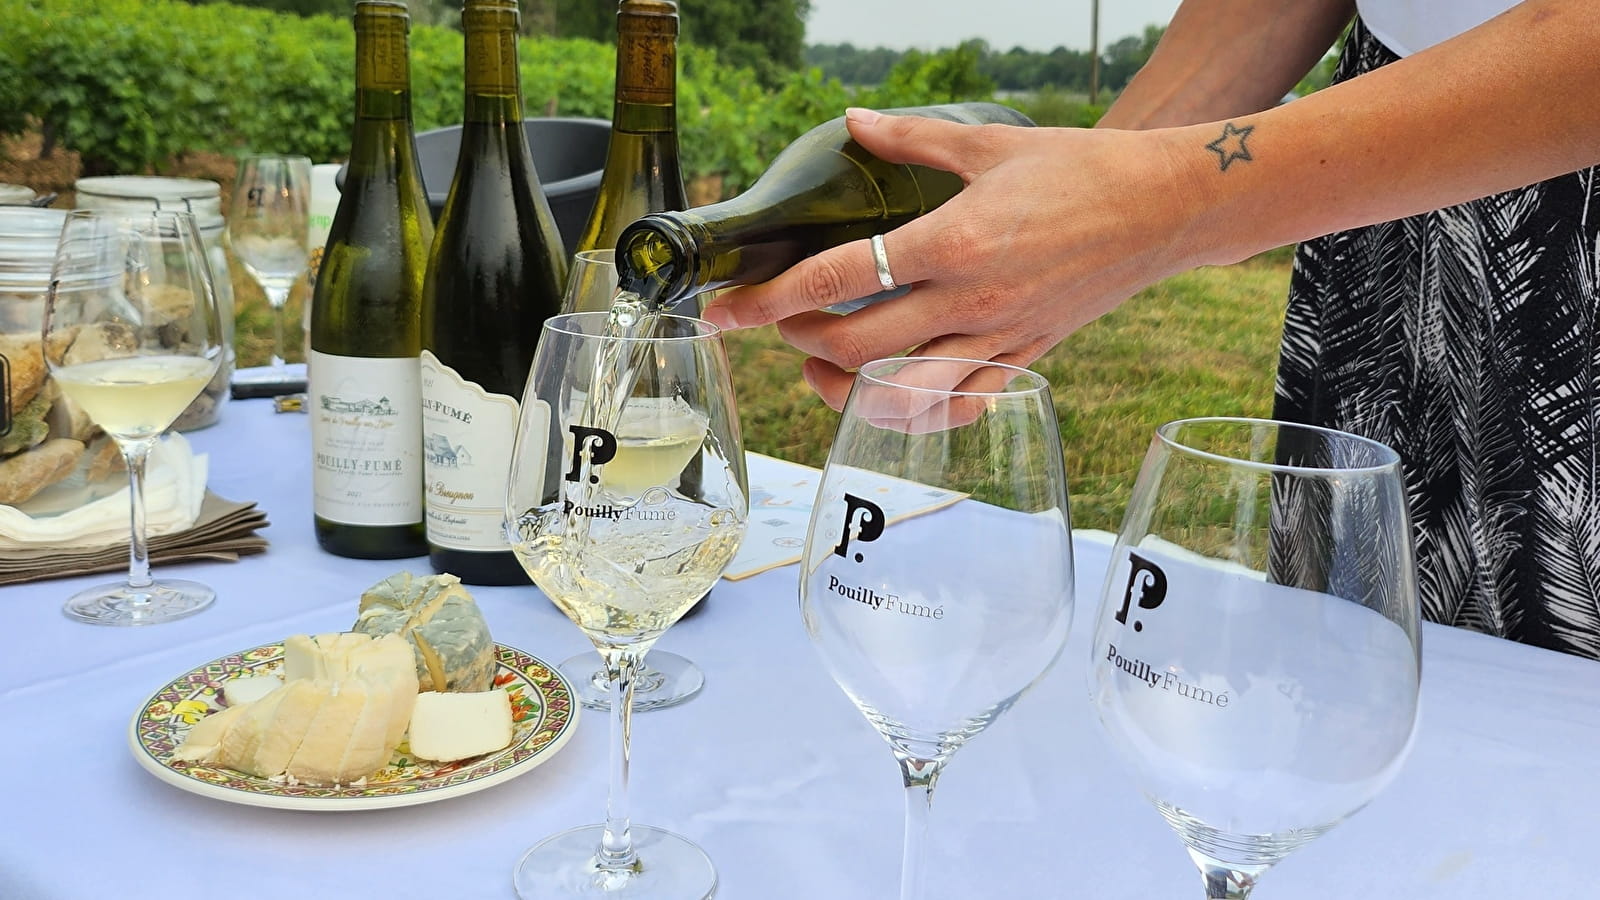 'It's Wine Time' dans un lieu chargé d'histoire, au village vigneron de Saint-Andelain